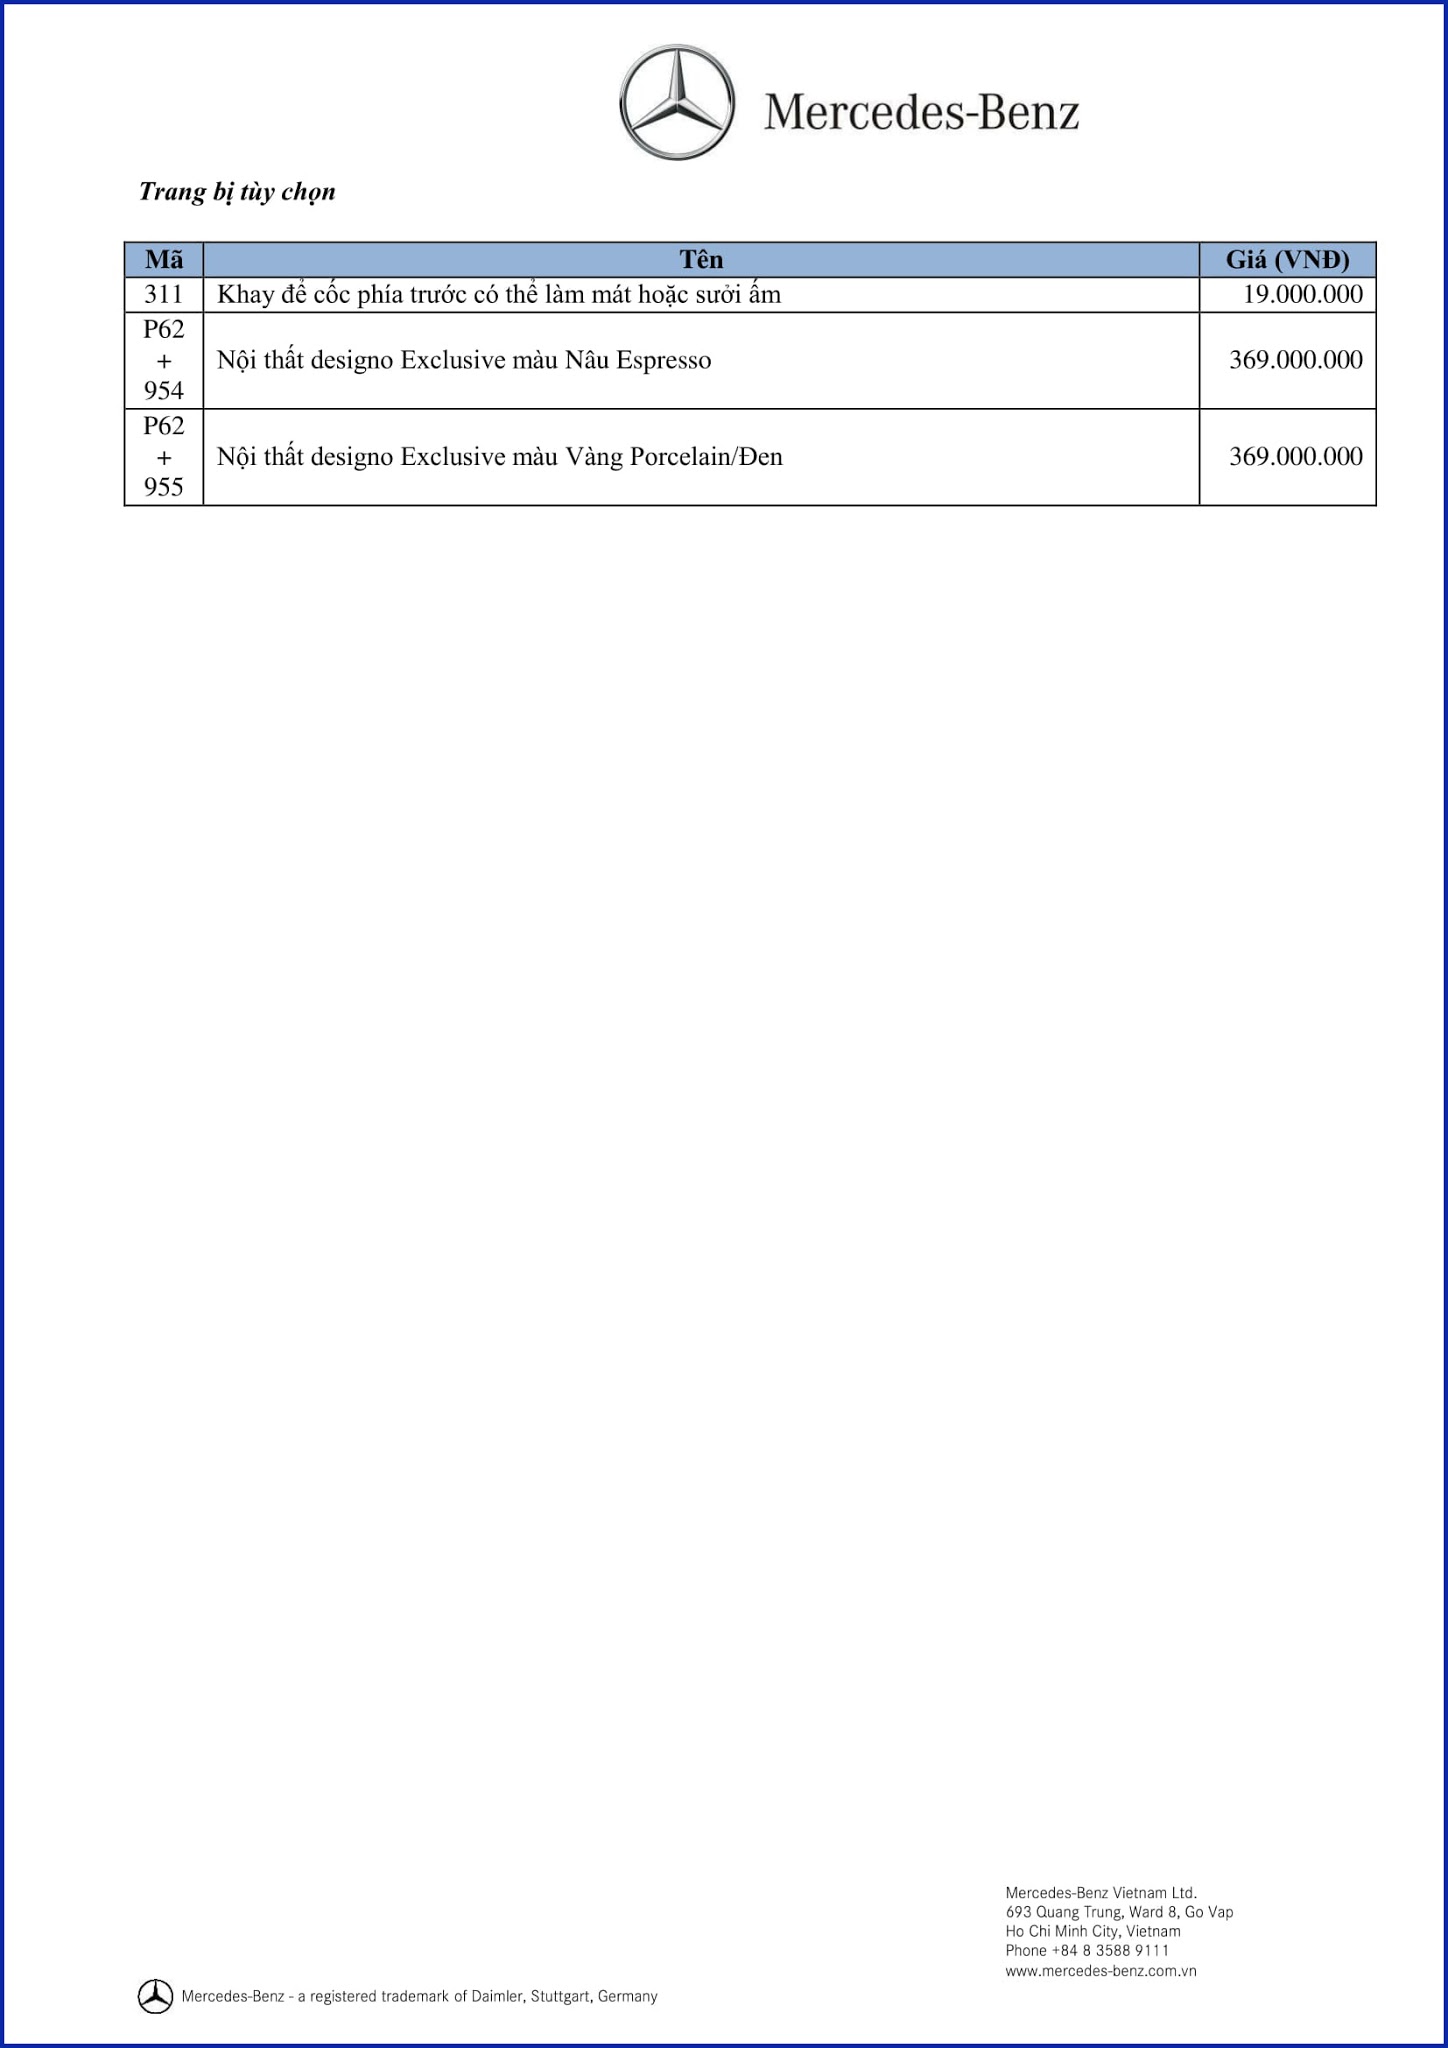 Bảng thông số kỹ thuật Mercedes GLS 500 4MATIC 2019 tại Mercedes Trường Chinh